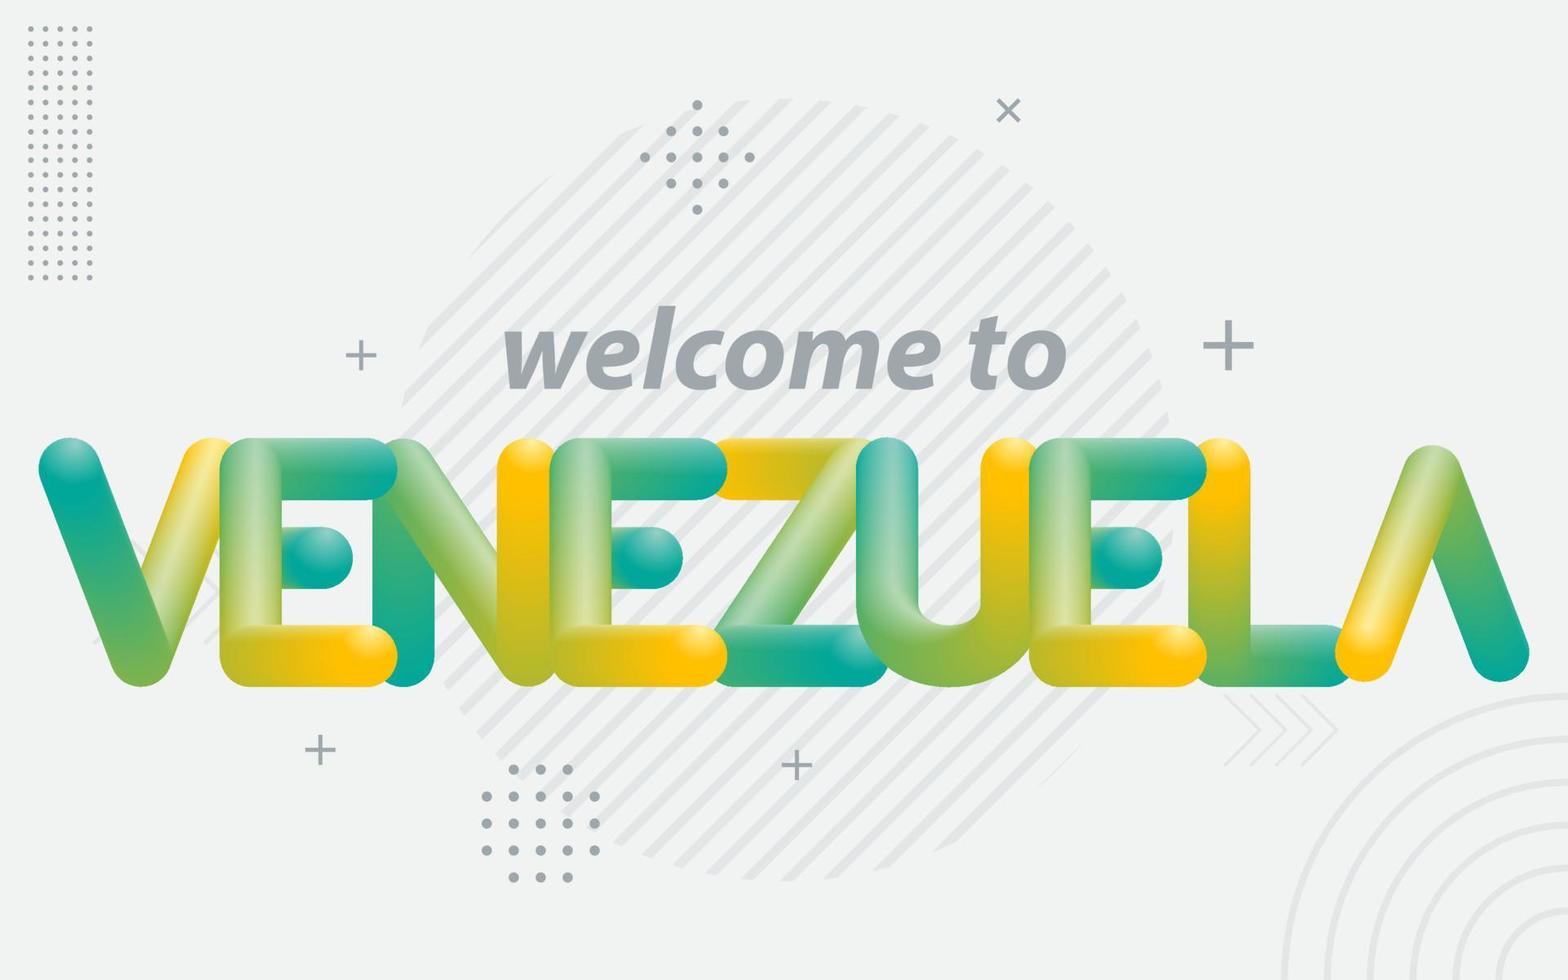 Willkommen in Venezuela. kreative typografie mit 3d-mischeffekt vektor